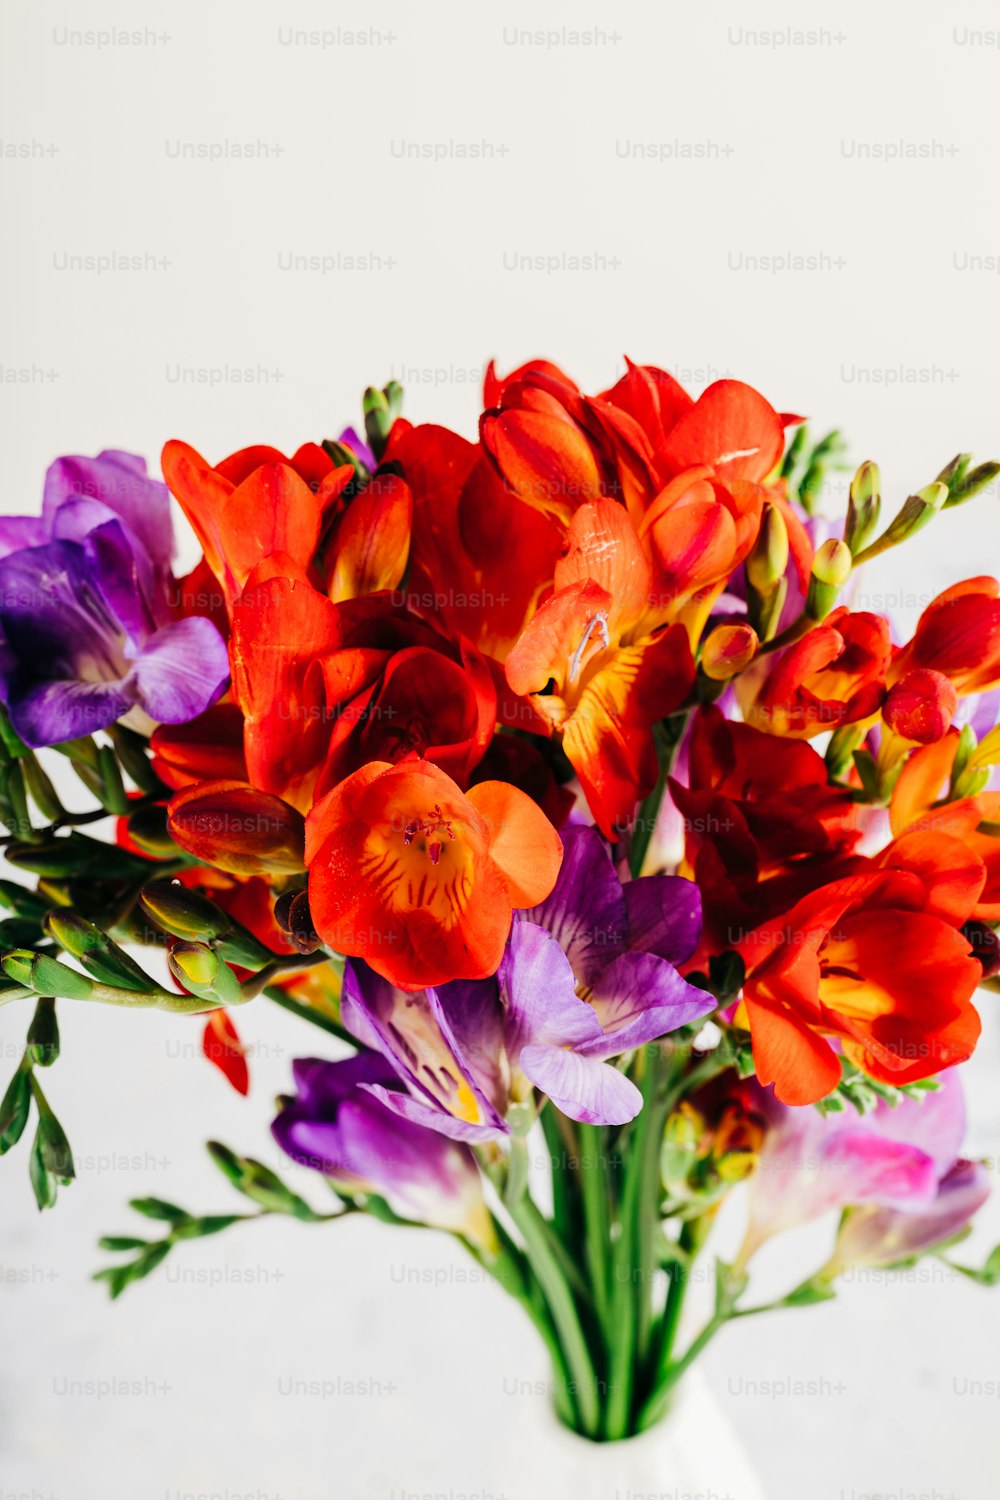 Un jarrón lleno de flores de colores encima de una mesa